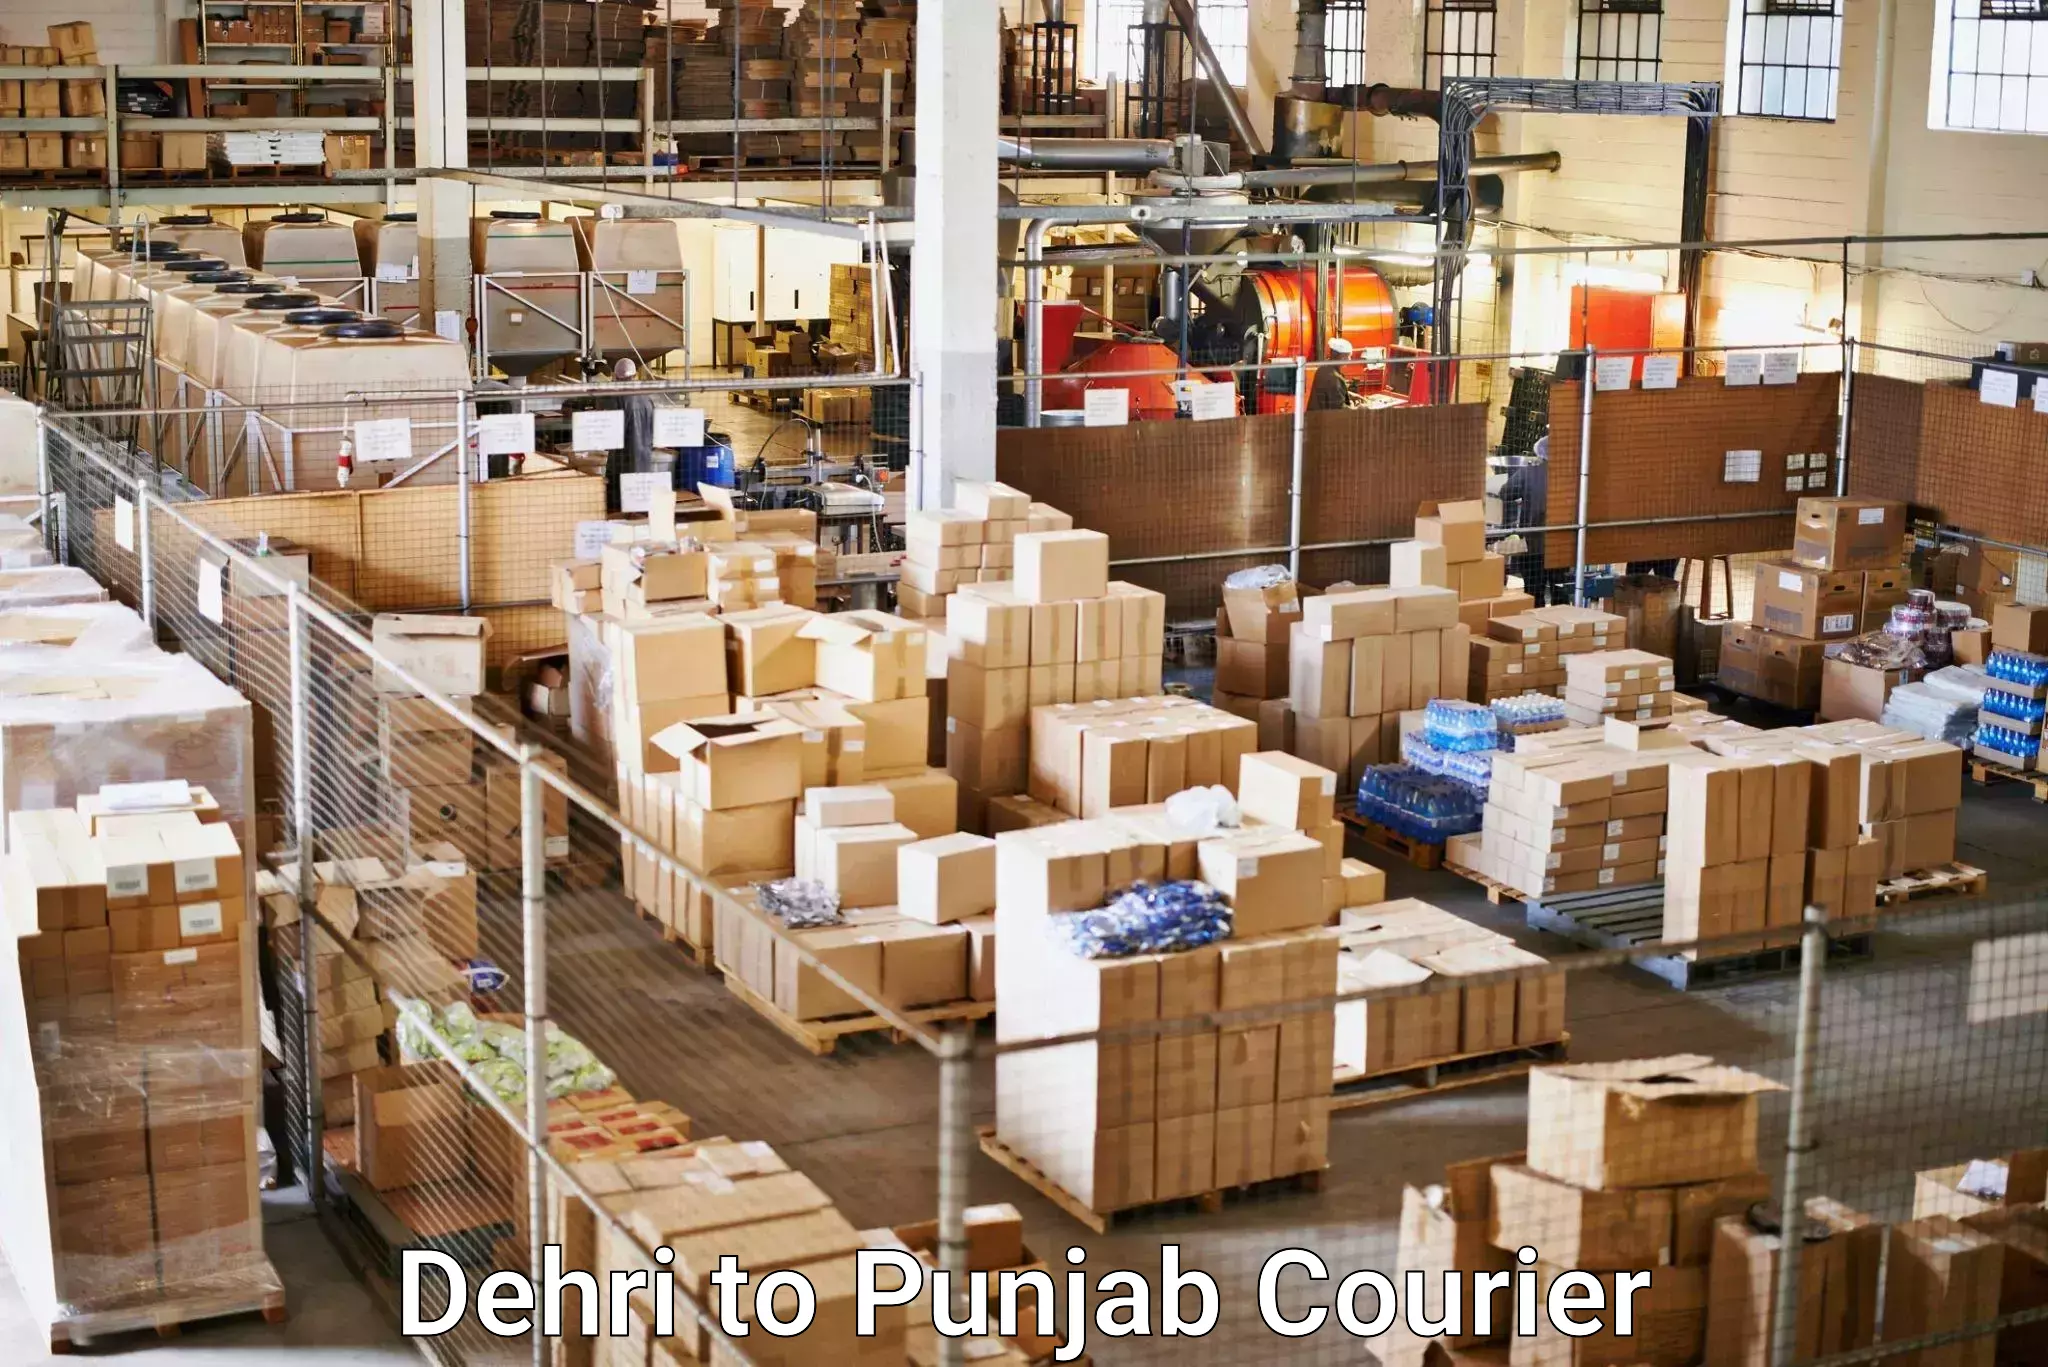 International courier rates Dehri to Jalandhar